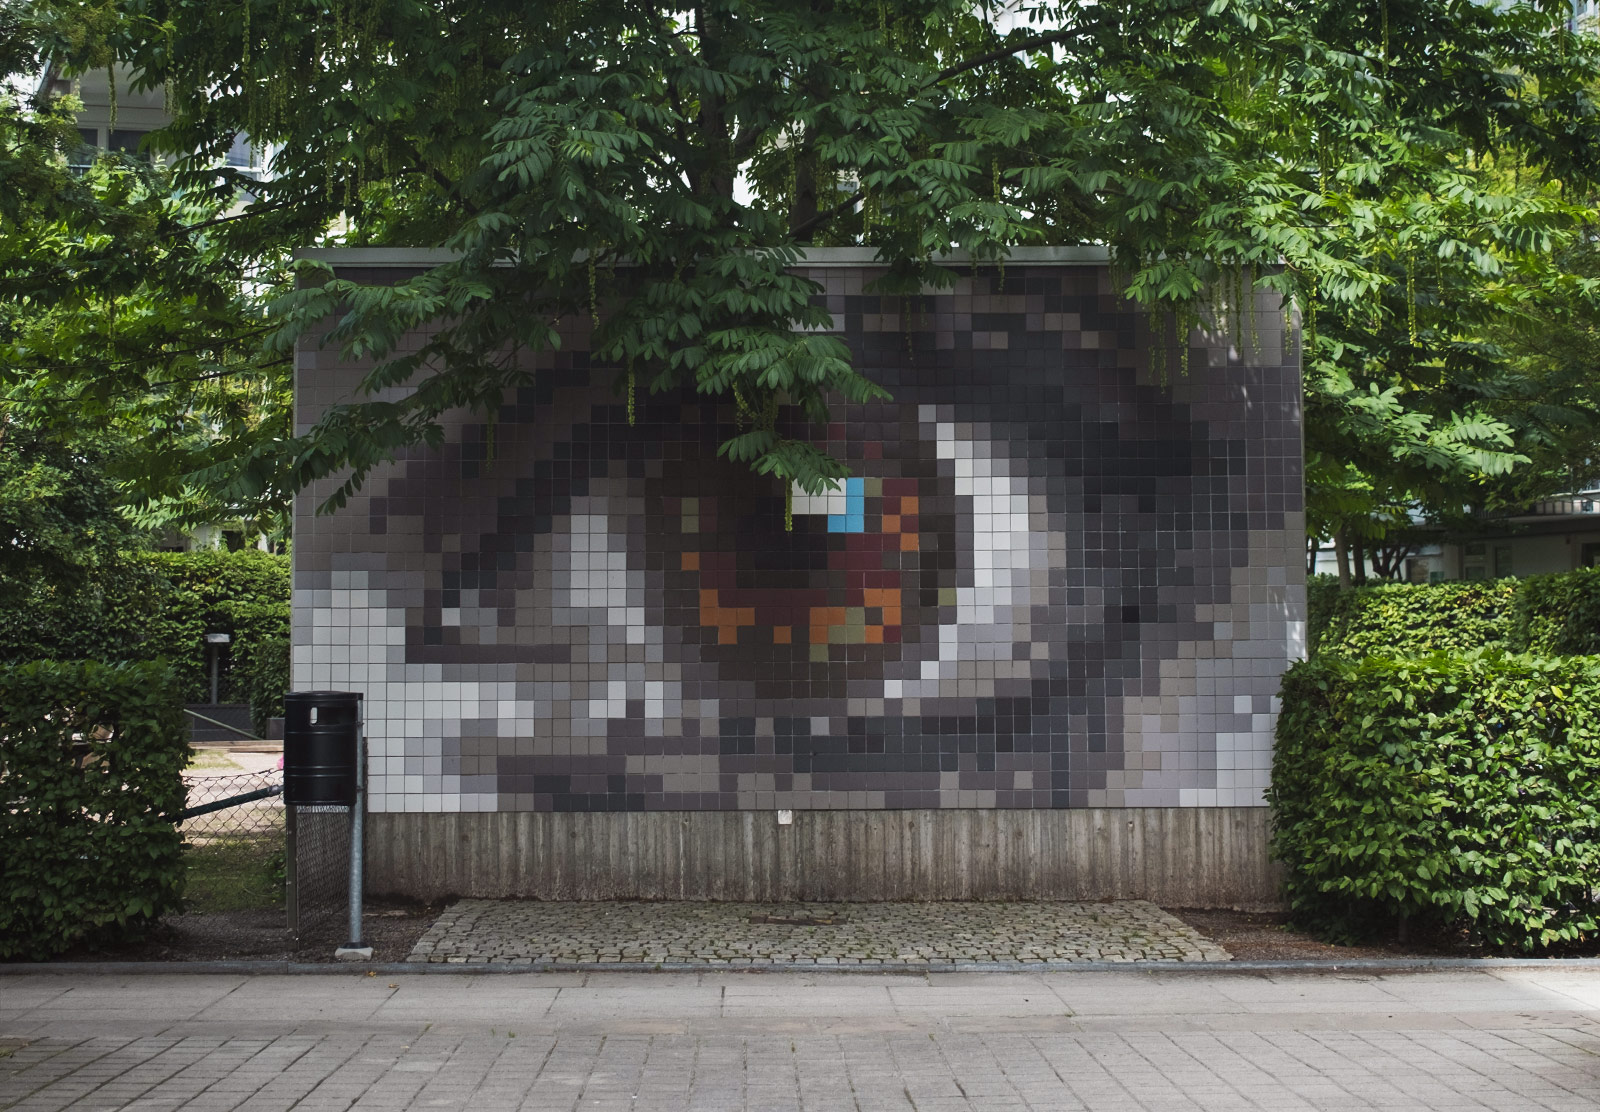 Tiled eye mural on wall